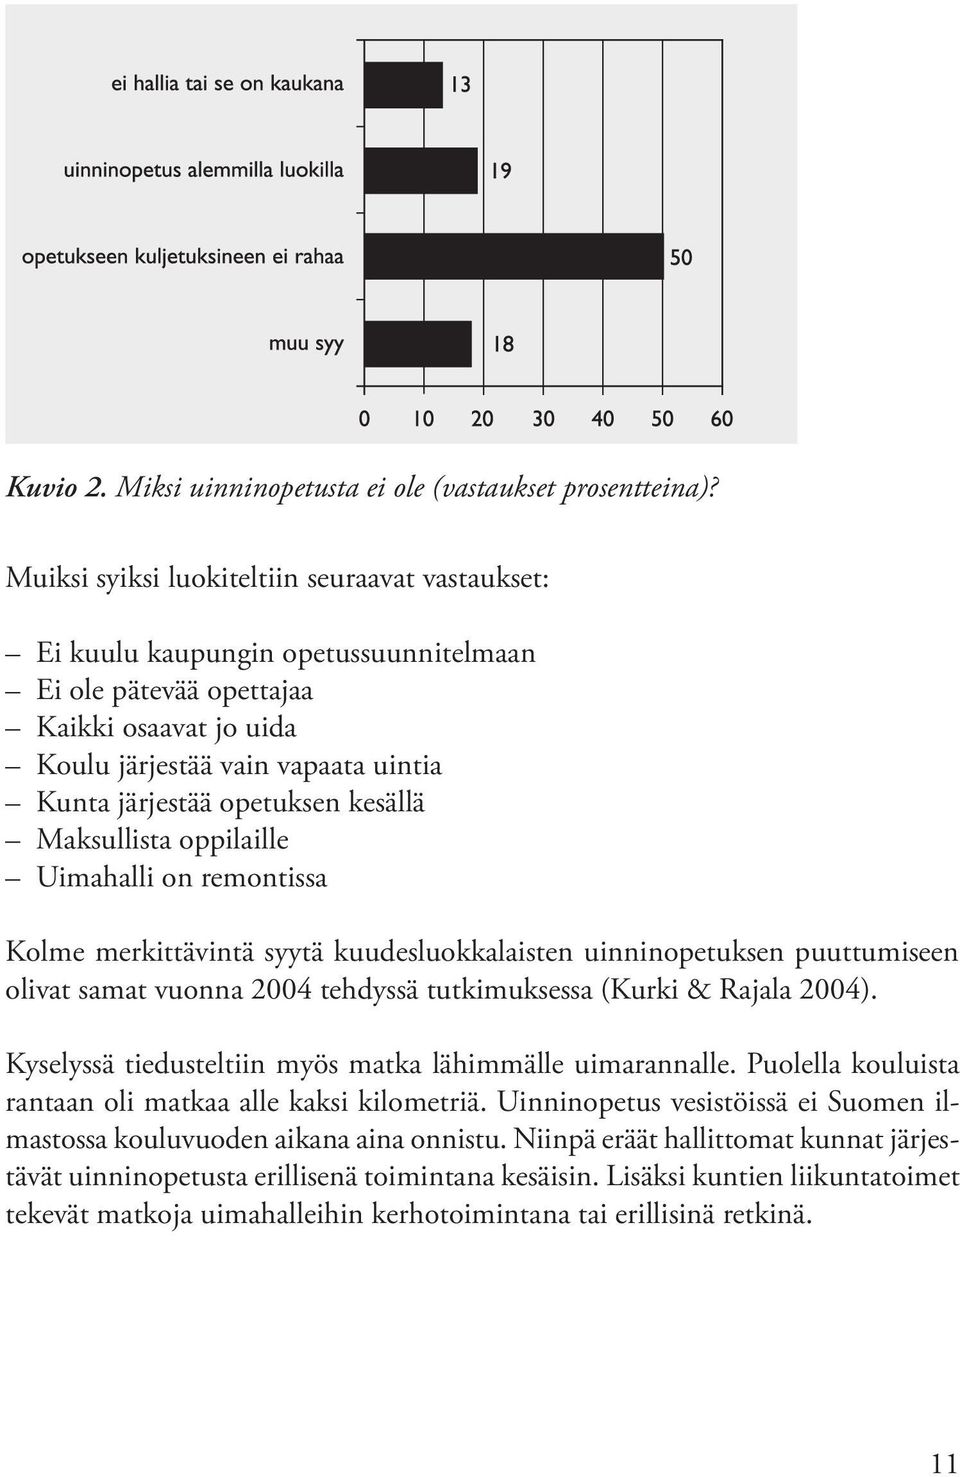 kesällä Maksullista oppilaille Uimahalli on remontissa Kolme merkittävintä syytä kuudesluokkalaisten uinninopetuksen puuttumiseen olivat samat vuonna 2004 tehdyssä tutkimuksessa (Kurki & Rajala 2004).